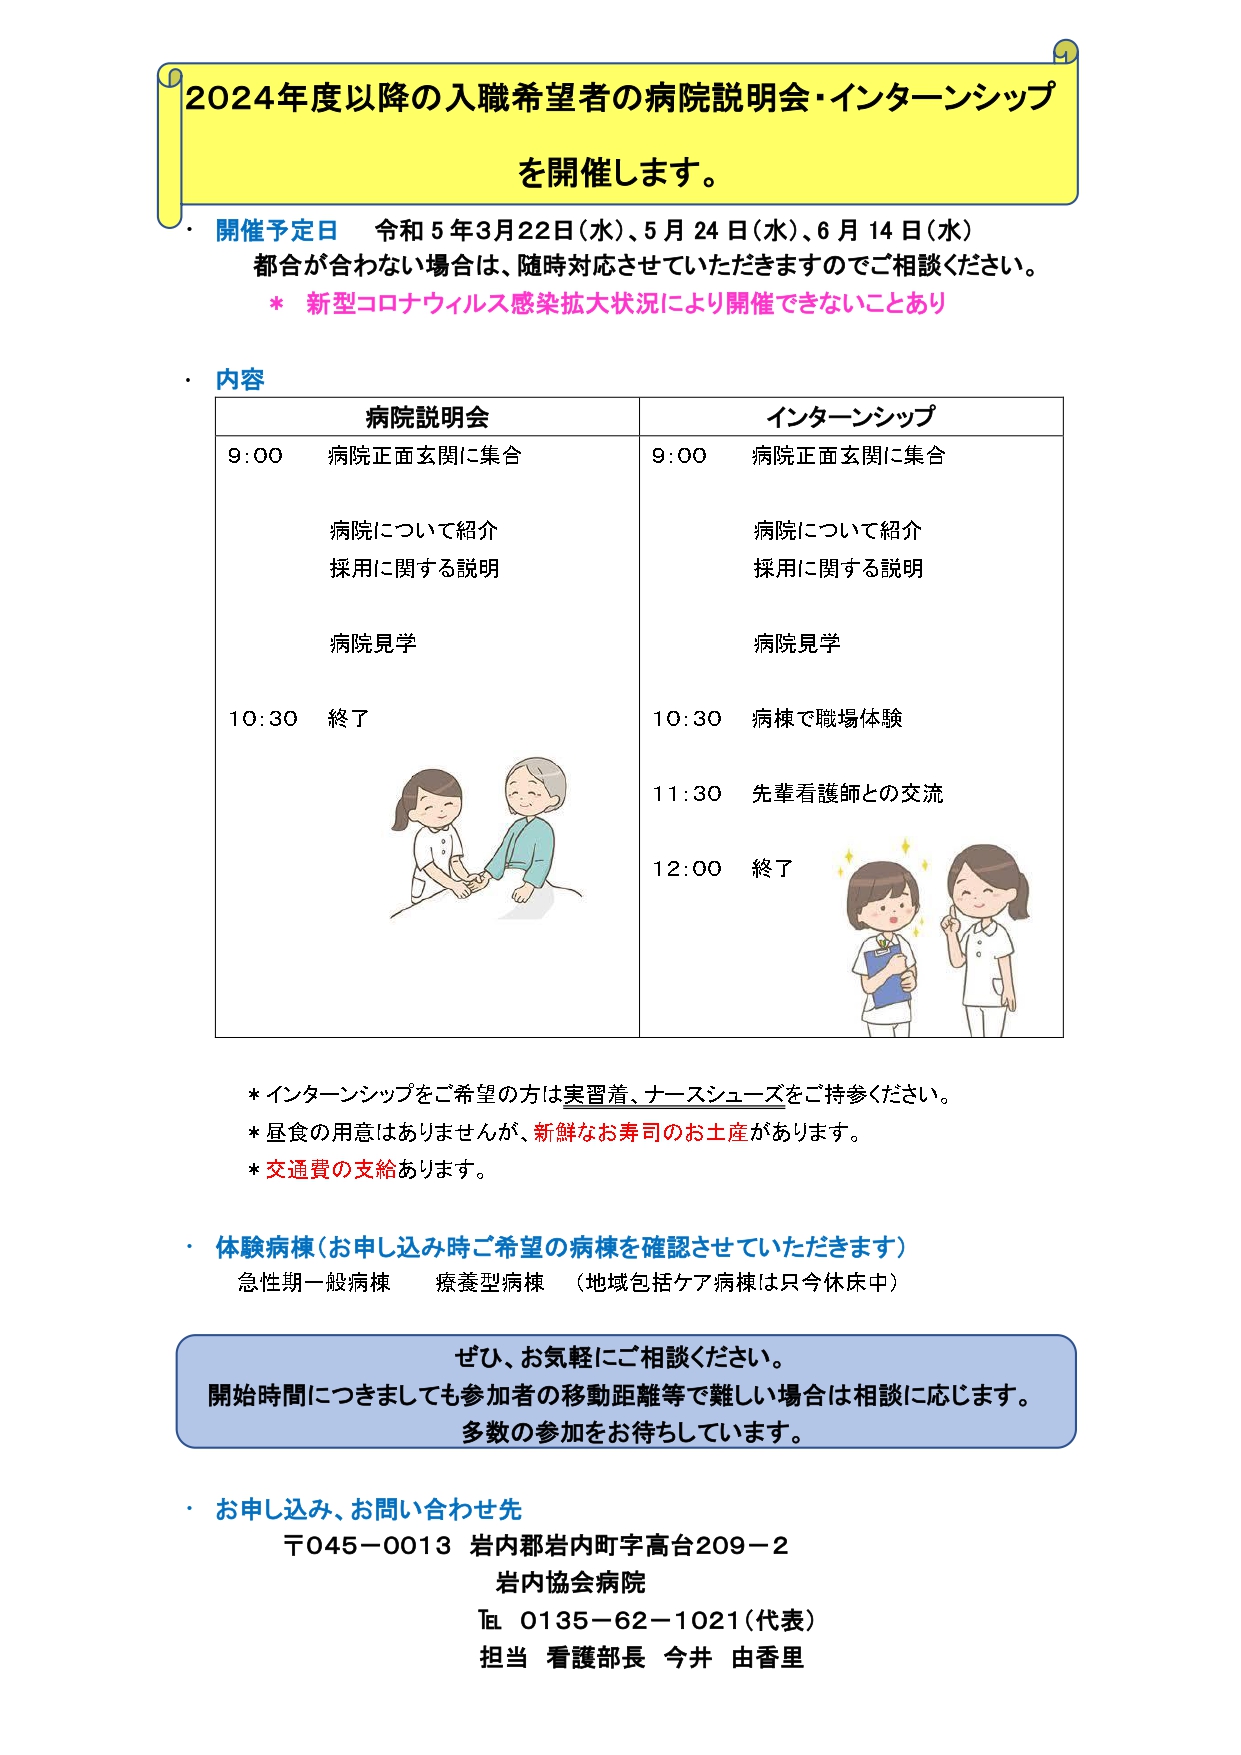 新人看護師採用面接、インターンシップ 2_page-0001.jpg